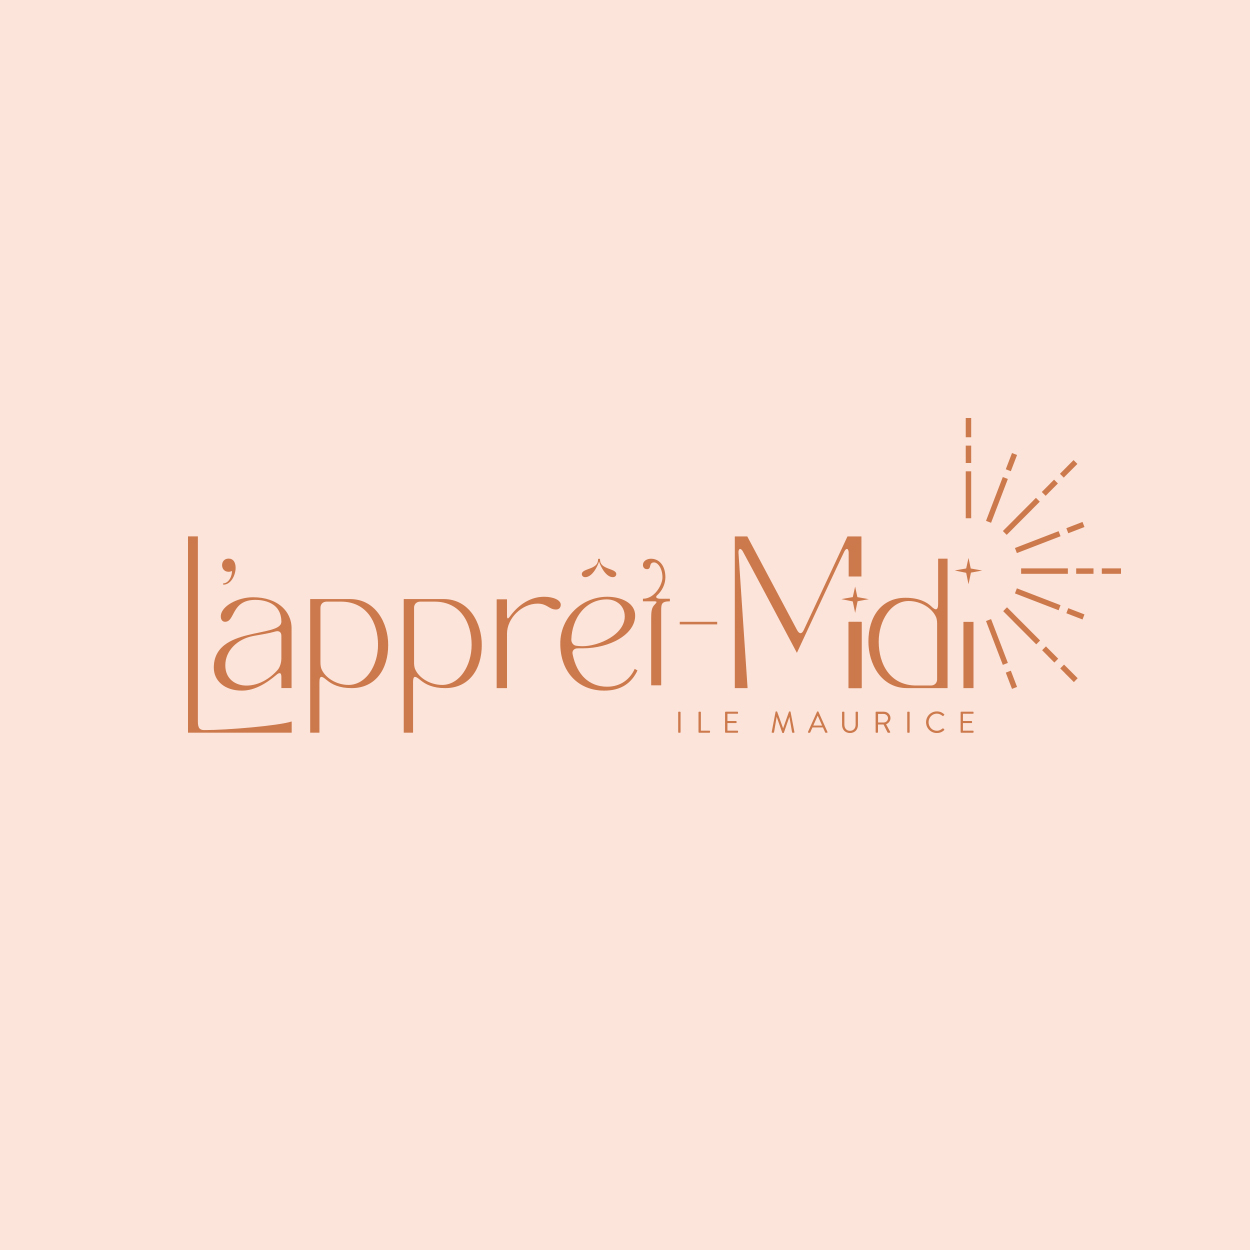 LAppret_Midi_Logo